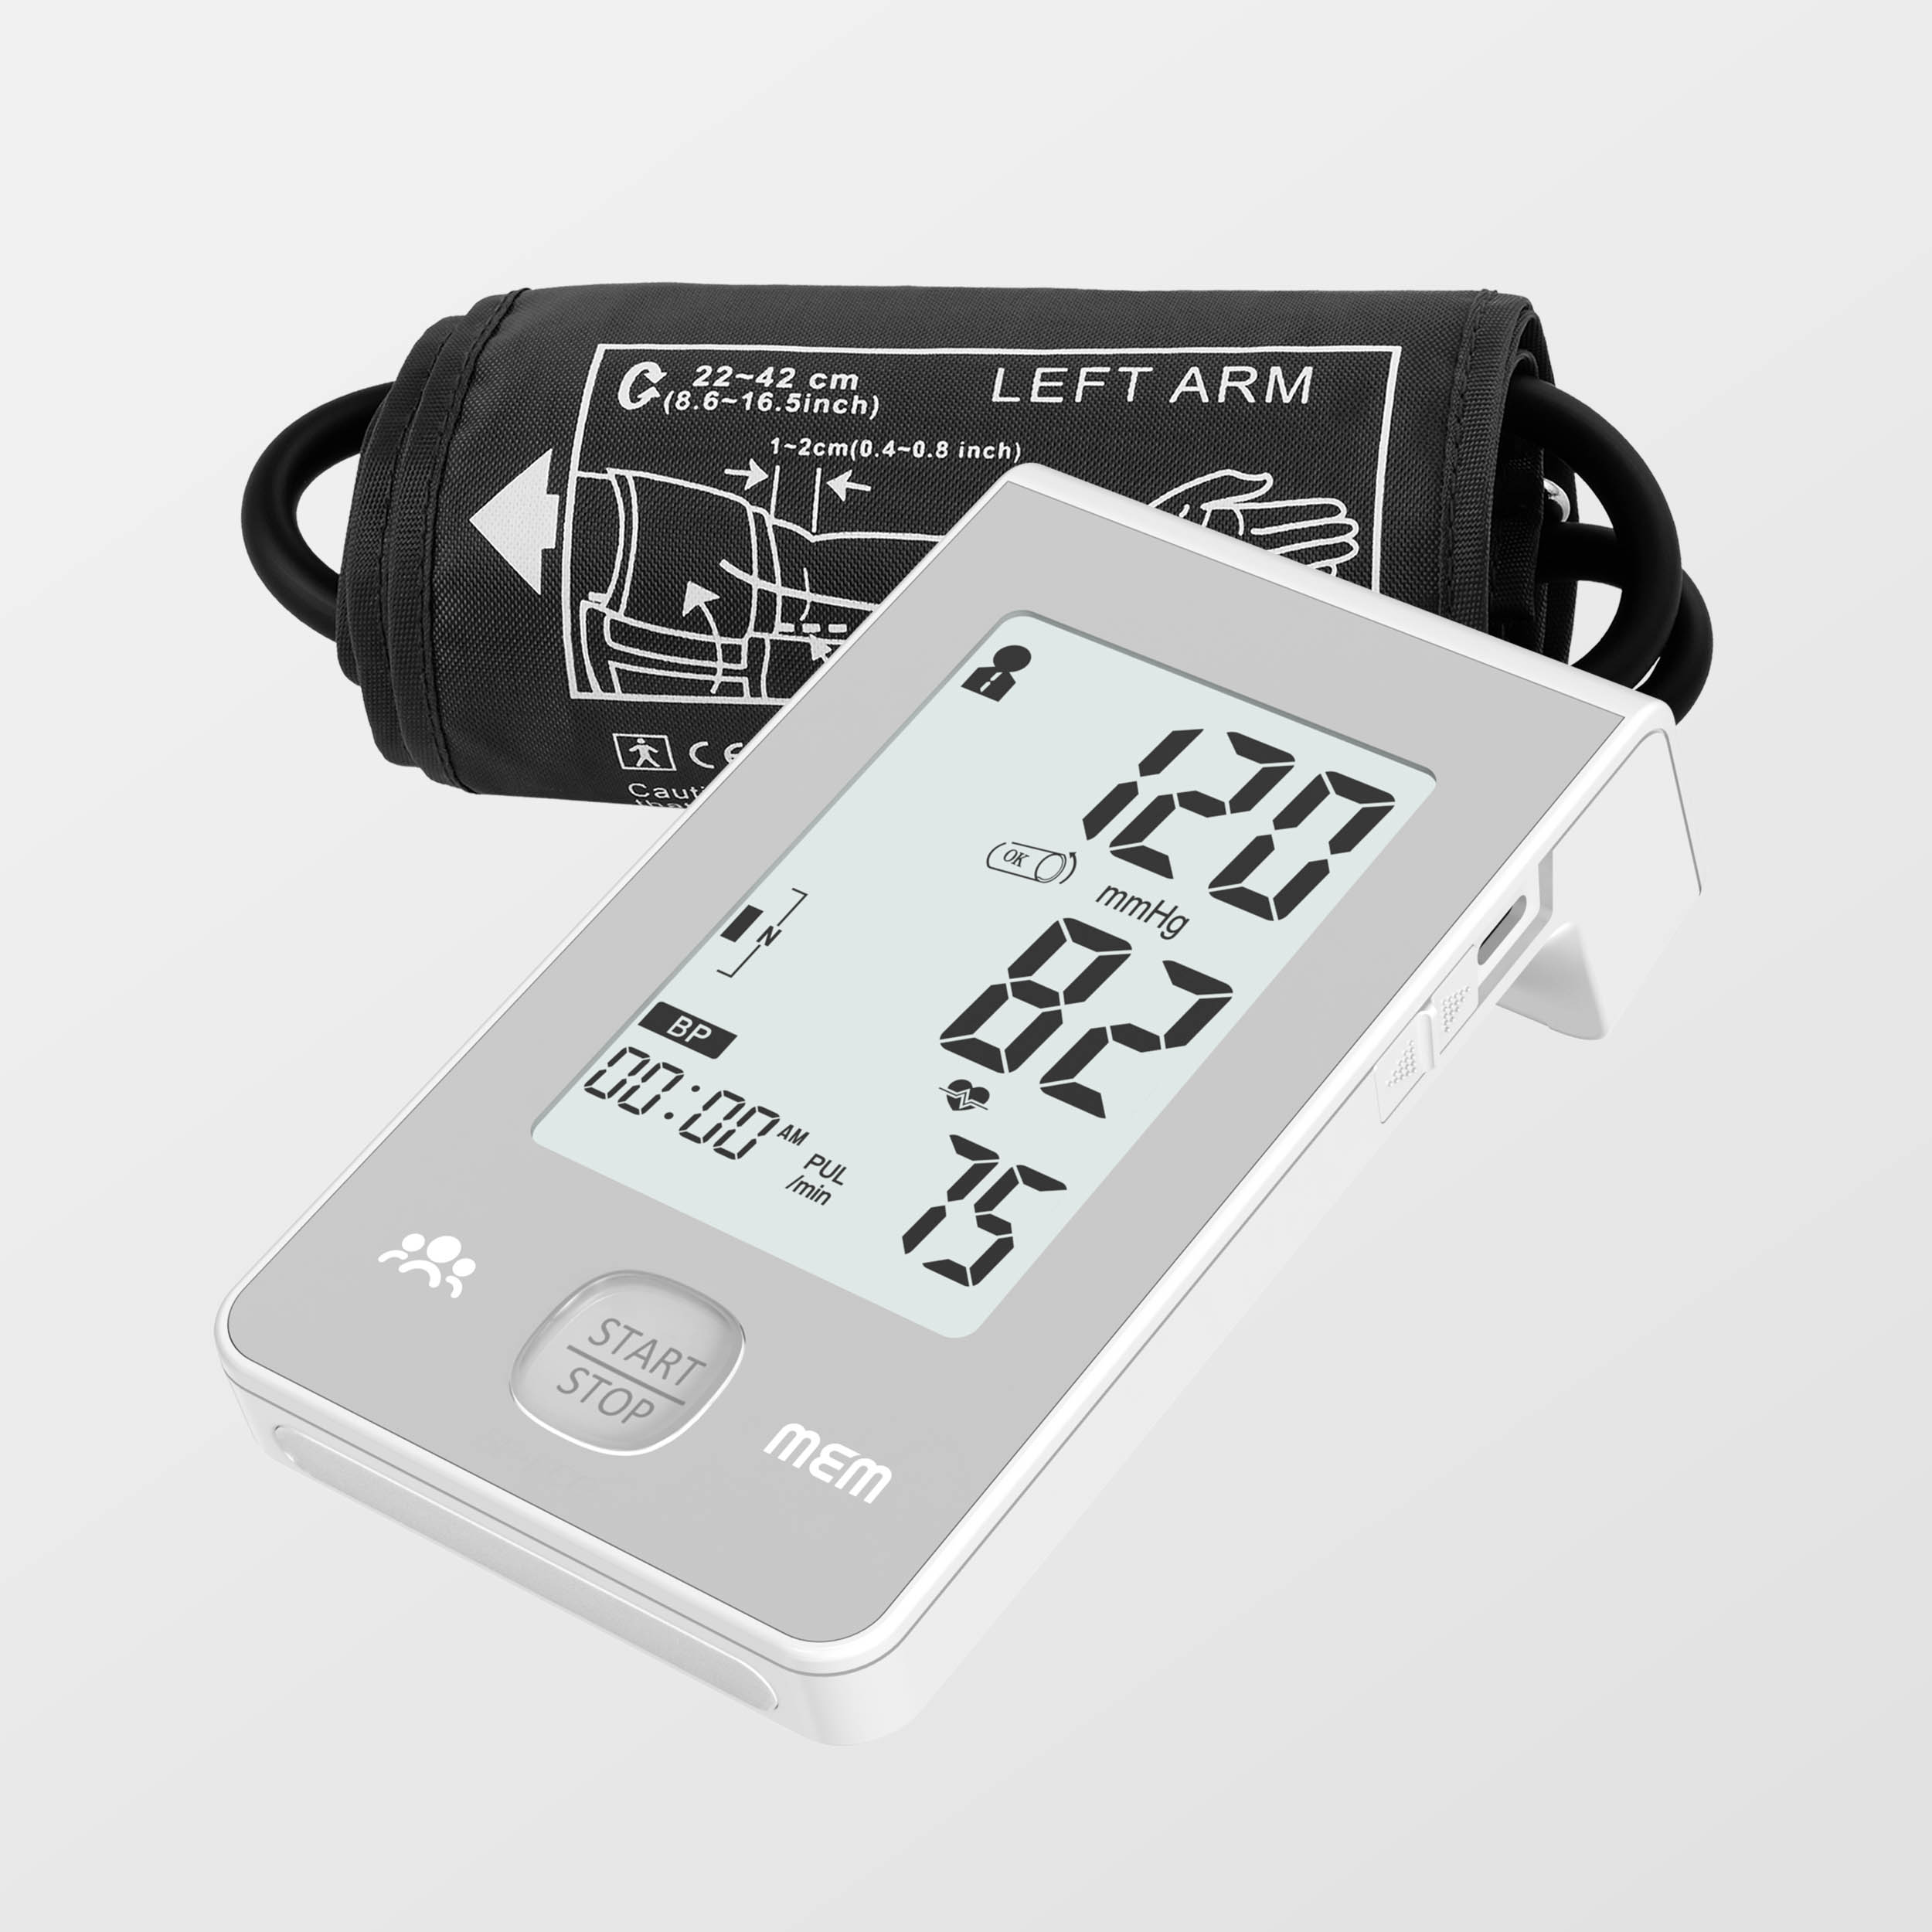 Ntxiv Loj Zaub Dual Power Supply Intelligent Blood Pressure Monitor nrog Ecg